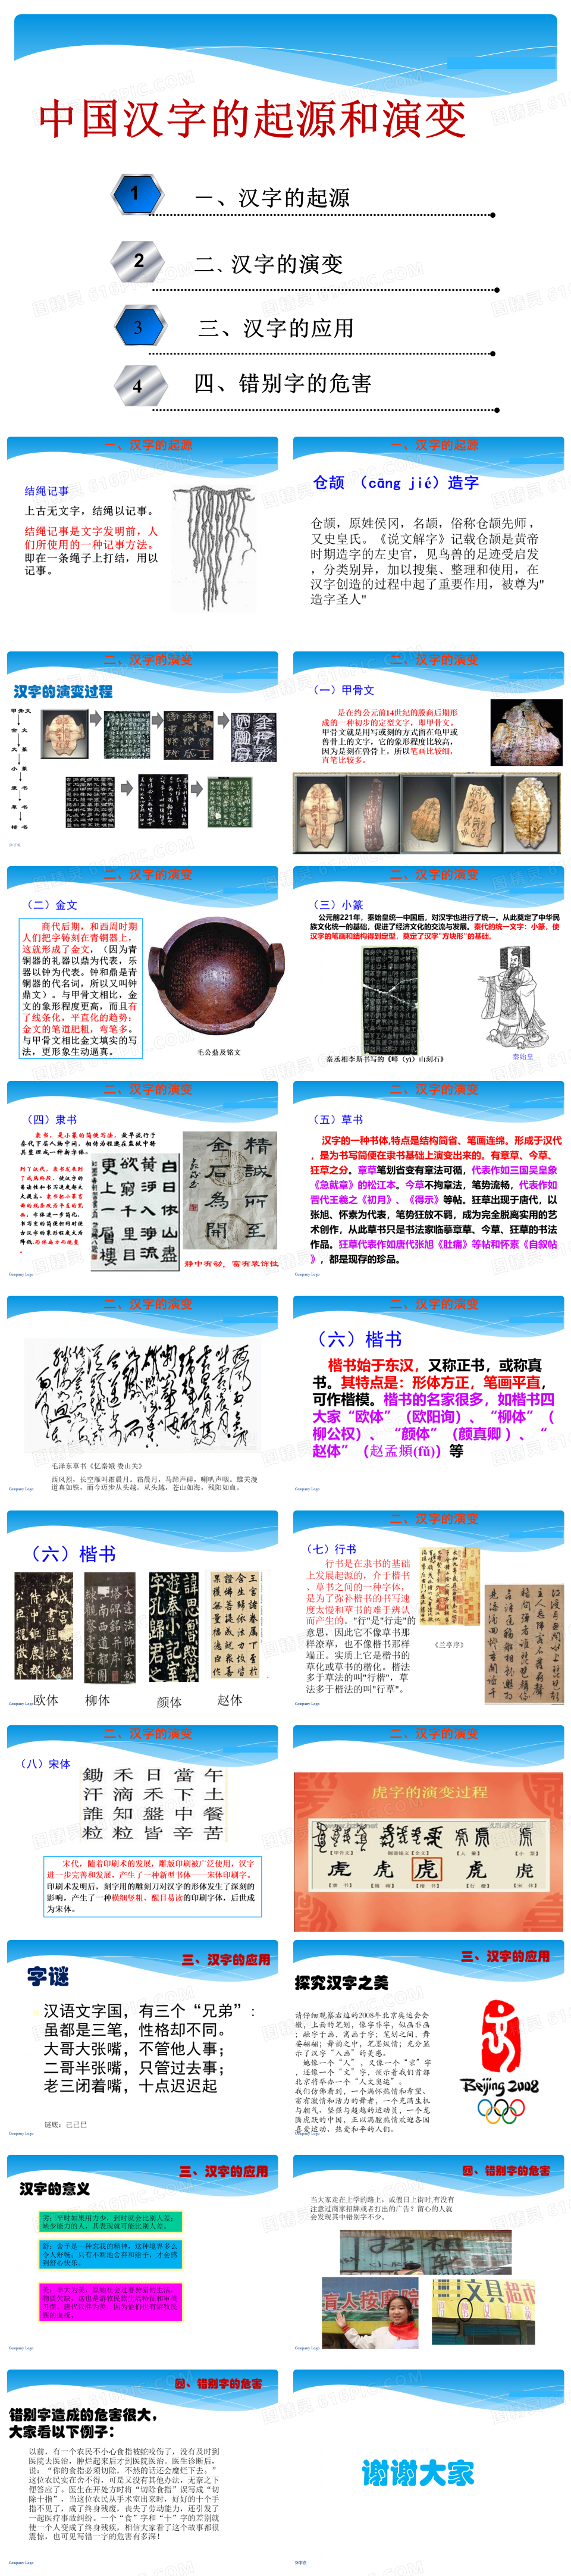 中国汉字的起源和演变